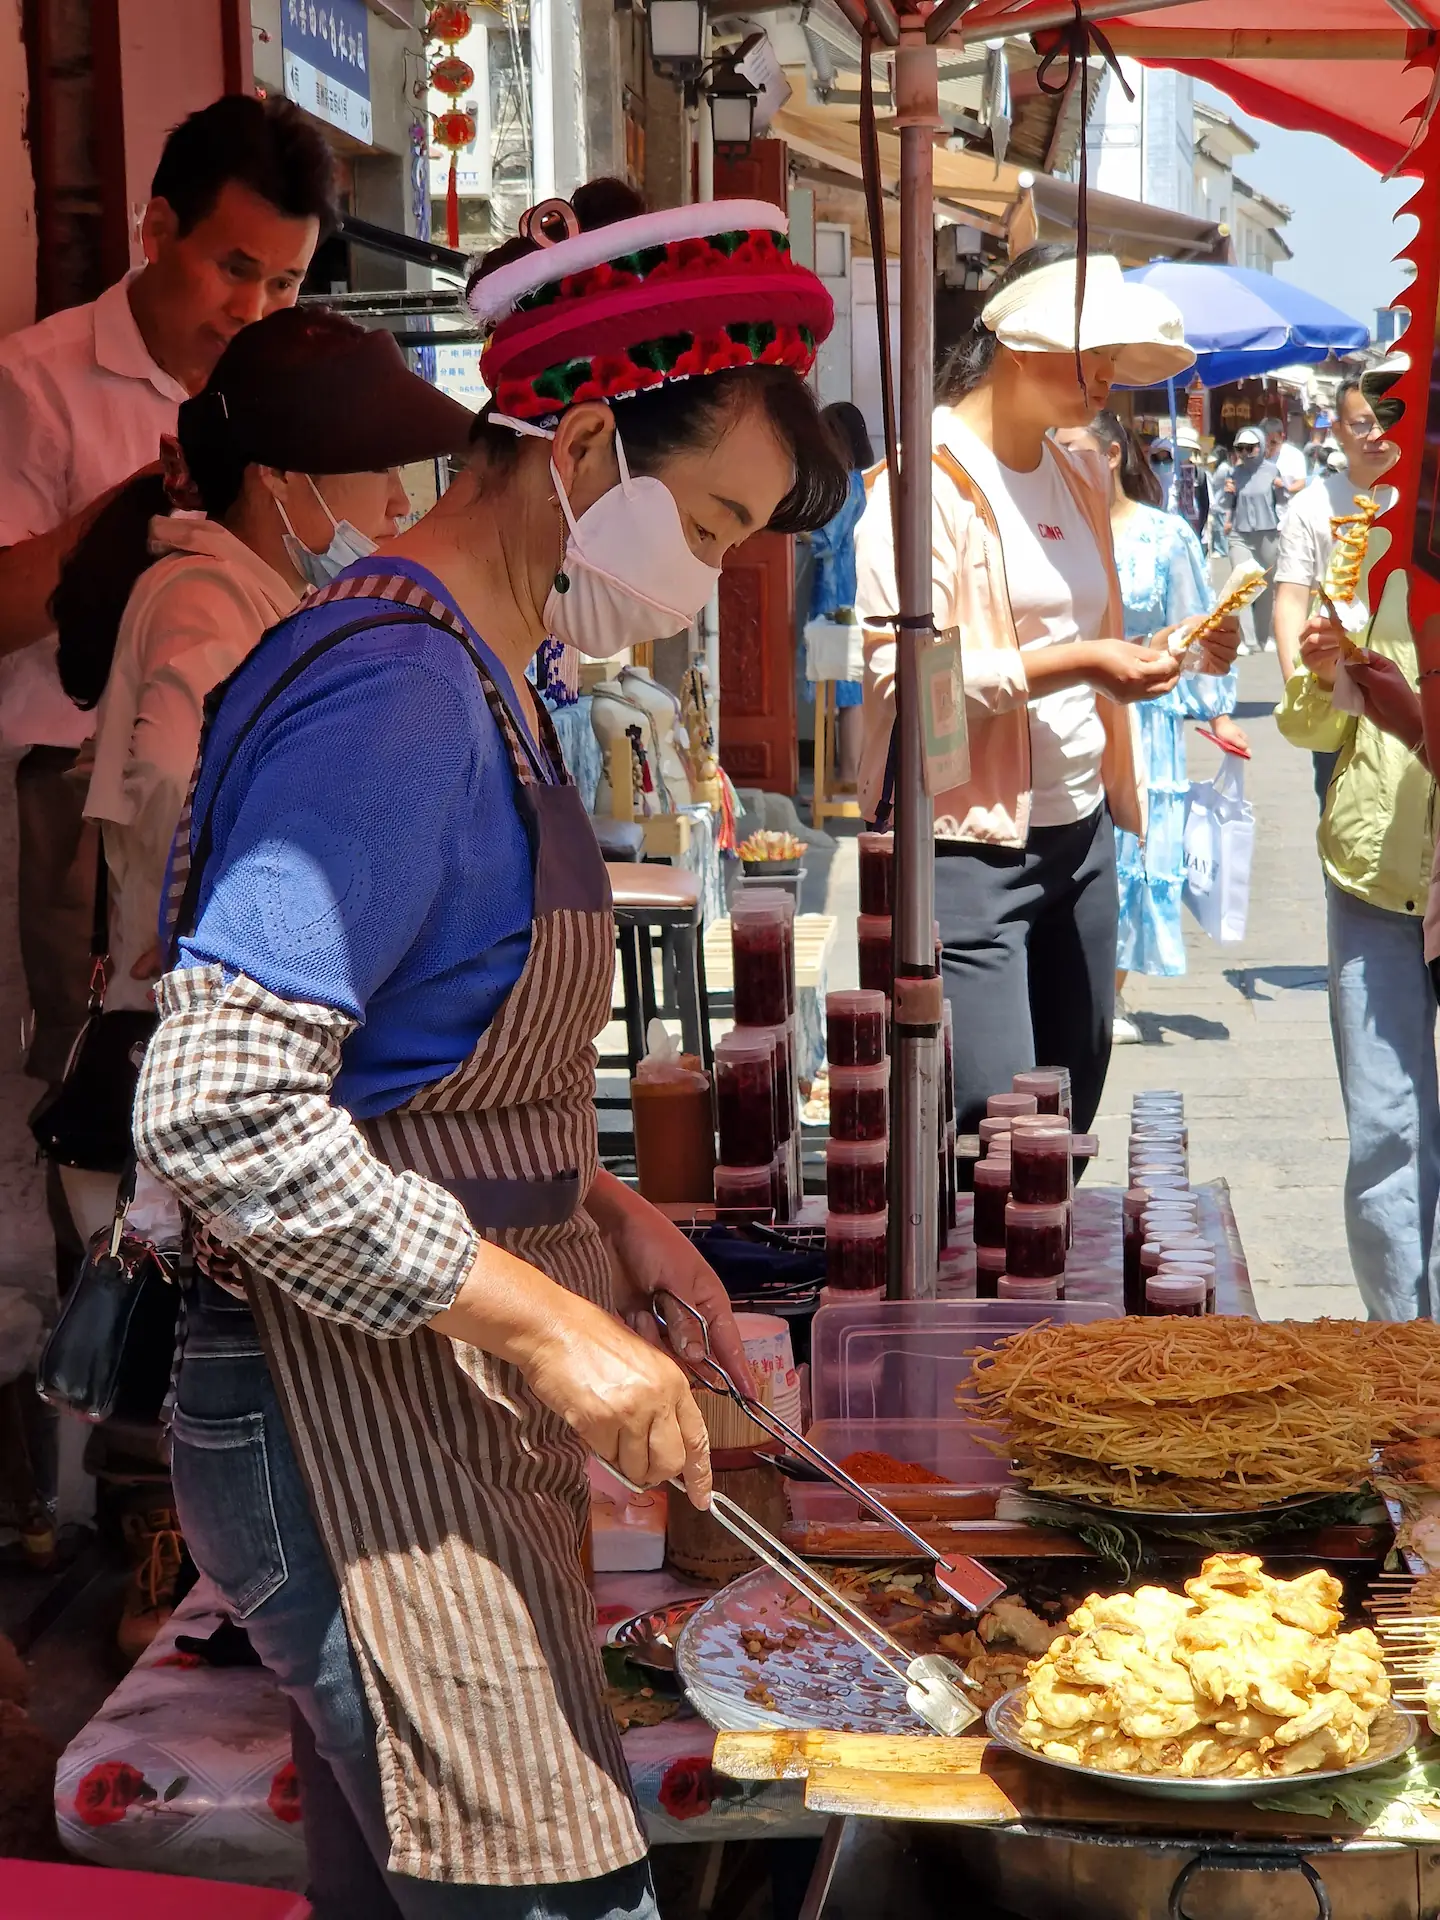 Une vendeuse au marché fait sauter des aliments dans une poêle. Elle porte une coiffe colorée qui retient ses cheveux.